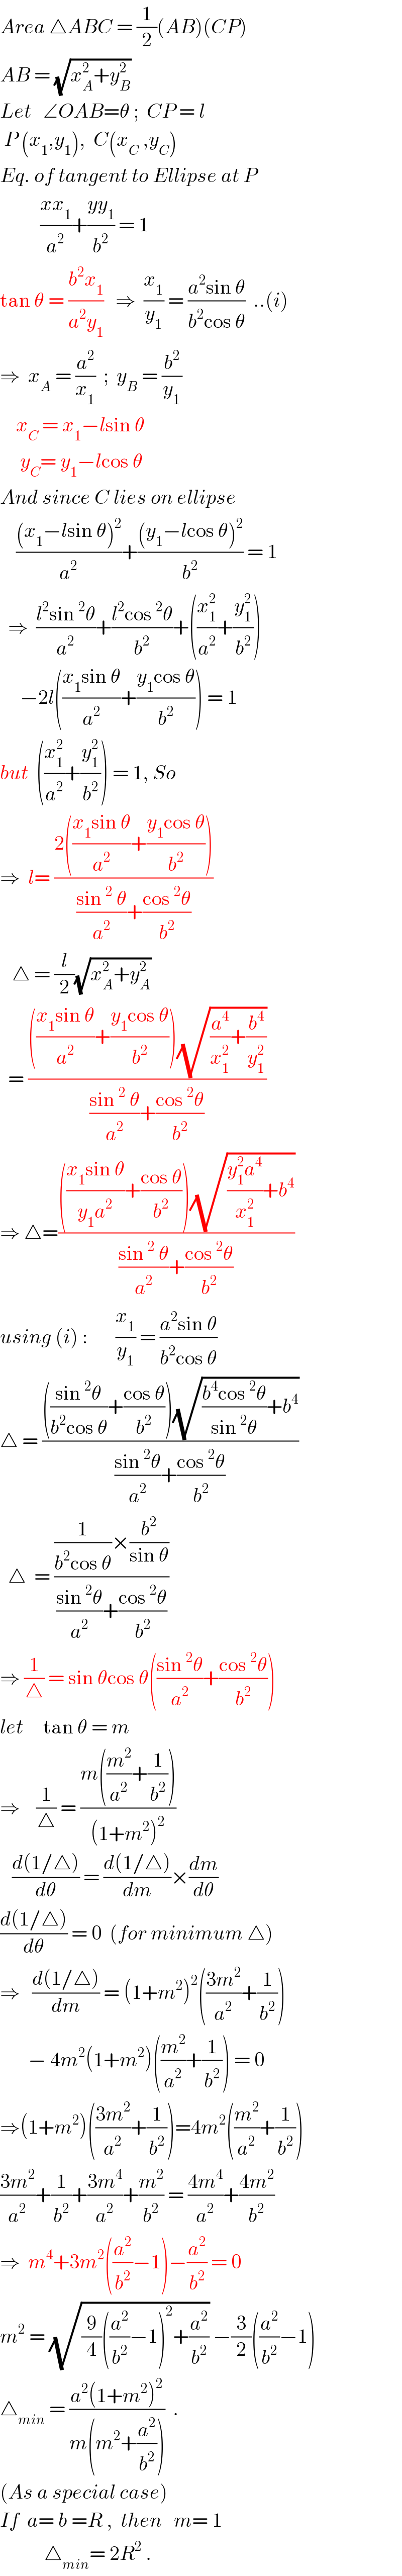 Area △ABC = (1/2)(AB)(CP)  AB = (√(x_A ^2 +y_B ^2 ))  Let   ∠OAB=θ ;  CP = l    P (x_1 ,y_1 ),  C(x_C  ,y_C )  Eq. of tangent to Ellipse at P            ((xx_1 )/a^2 )+((yy_1 )/b^2 ) = 1  tan θ = ((b^2 x_1 )/(a^2 y_1 ))   ⇒  (x_1 /y_1 ) = ((a^2 sin θ)/(b^2 cos θ))  ..(i)  ⇒  x_A  = (a^2 /x_1 )  ;  y_B  = (b^2 /y_1 )      x_C  = x_1 −lsin θ       y_C = y_1 −lcos θ  And since C lies on ellipse      (((x_1 −lsin θ)^2 )/a^2 )+(((y_1 −lcos θ)^2 )/b^2 ) = 1    ⇒  ((l^2 sin^2 θ)/a^2 )+((l^2 cos^2 θ)/b^2 )+((x_1 ^2 /a^2 )+(y_1 ^2 /b^2 ))       −2l(((x_1 sin θ)/a^2 )+((y_1 cos θ)/b^2 )) = 1  but  ((x_1 ^2 /a^2 )+(y_1 ^2 /b^2 )) = 1, So  ⇒  l= ((2(((x_1 sin θ)/a^2 )+((y_1 cos θ)/b^2 )))/(((sin^2  θ)/a^2 )+((cos^2 θ)/b^2 )))      △ = (l/2)(√(x_A ^2 +y_A ^2 ))    = (((((x_1 sin θ)/a^2 )+((y_1 cos θ)/b^2 ))(√((a^4 /x_1 ^2 )+(b^4 /y_1 ^2 ))))/(((sin^2  θ)/a^2 )+((cos^2 θ)/b^2 )))   ⇒ △=(((((x_1 sin θ)/(y_1 a^2 ))+((cos θ)/b^2 ))(√(((y_1 ^2 a^4 )/x_1 ^2 )+b^4 )))/(((sin^2  θ)/a^2 )+((cos^2 θ)/b^2 )))  using (i) :       (x_1 /y_1 ) = ((a^2 sin θ)/(b^2 cos θ))   △ = (((((sin^2 θ)/(b^2 cos θ))+((cos θ)/b^2 ))(√(((b^4 cos^2 θ)/(sin^2 θ))+b^4 )))/(((sin^2 θ)/a^2 )+((cos^2 θ)/b^2 )))    △  = (((1/(b^2 cos θ))×(b^2 /(sin θ)))/(((sin^2 θ)/a^2 )+((cos^2 θ)/b^2 )))   ⇒ (1/△) = sin θcos θ(((sin^2 θ)/a^2 )+((cos^2 θ)/b^2 ))  let     tan θ = m  ⇒    (1/△) = ((m((m^2 /a^2 )+(1/b^2 )))/((1+m^2 )^2 ))     ((d(1/△))/dθ) = ((d(1/△))/dm)×(dm/dθ)  ((d(1/△))/dθ) = 0  (for minimum △)  ⇒   ((d(1/△))/dm) = (1+m^2 )^2 (((3m^2 )/a^2 )+(1/b^2 ))         − 4m^2 (1+m^2 )((m^2 /a^2 )+(1/b^2 )) = 0  ⇒(1+m^2 )(((3m^2 )/a^2 )+(1/b^2 ))=4m^2 ((m^2 /a^2 )+(1/b^2 ))  ((3m^2 )/a^2 )+(1/b^2 )+((3m^4 )/a^2 )+(m^2 /b^2 ) = ((4m^4 )/a^2 )+((4m^2 )/b^2 )  ⇒  m^4 +3m^2 ((a^2 /b^2 )−1)−(a^2 /b^2 ) = 0  m^2  = (√((9/4)((a^2 /b^2 )−1)^2 +(a^2 /b^2 ))) −(3/2)((a^2 /b^2 )−1)   △_(min)  = ((a^2 (1+m^2 )^2 )/(m(m^2 +(a^2 /b^2 ))))  .  (As a special case)  If  a= b =R ,  then   m= 1             △_(min) = 2R^2  .  